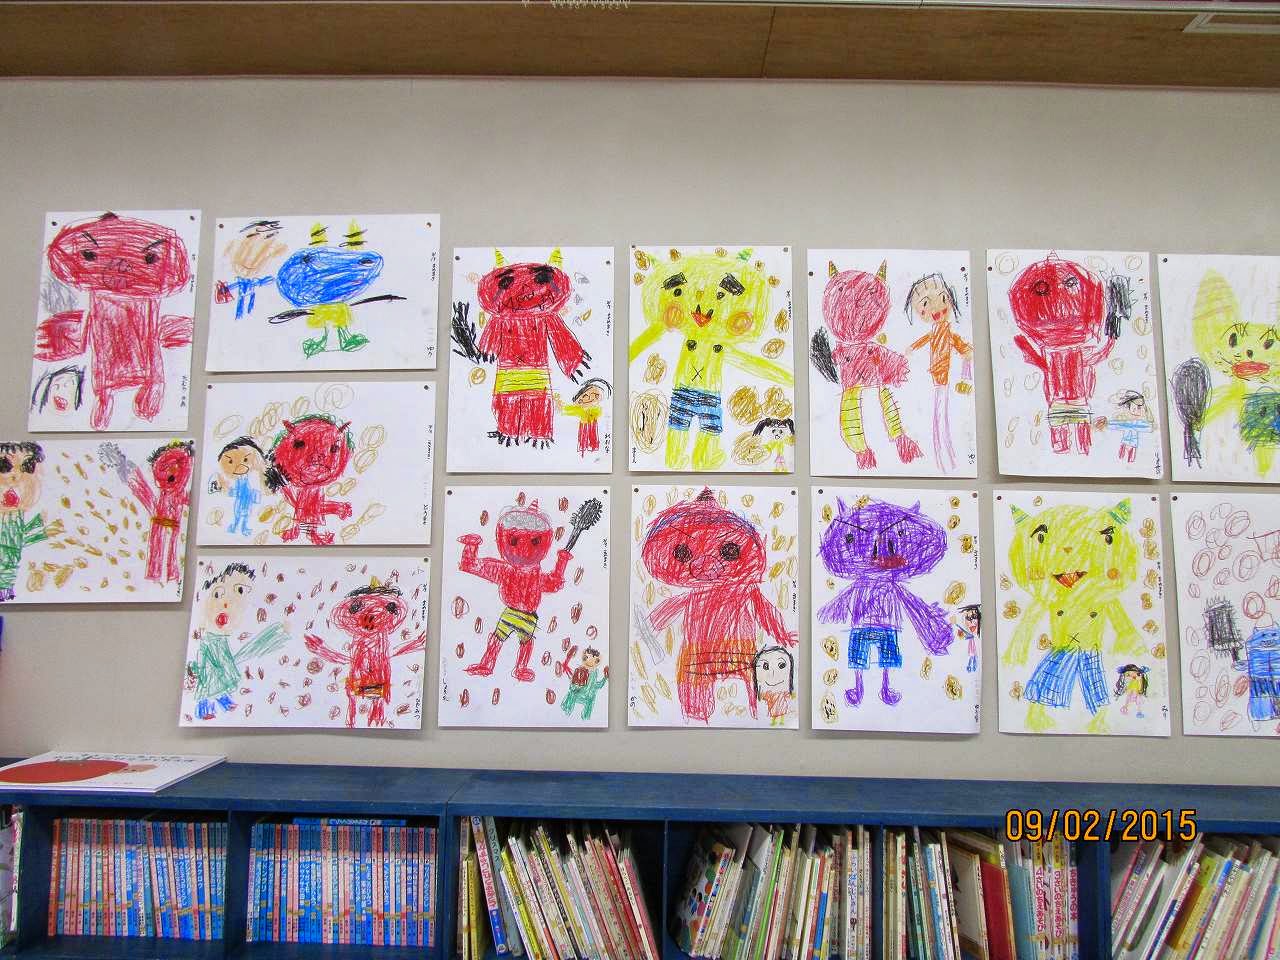 ふたば幼稚園の最近の様子 節分の鬼の絵です 墨絵も楽しいね